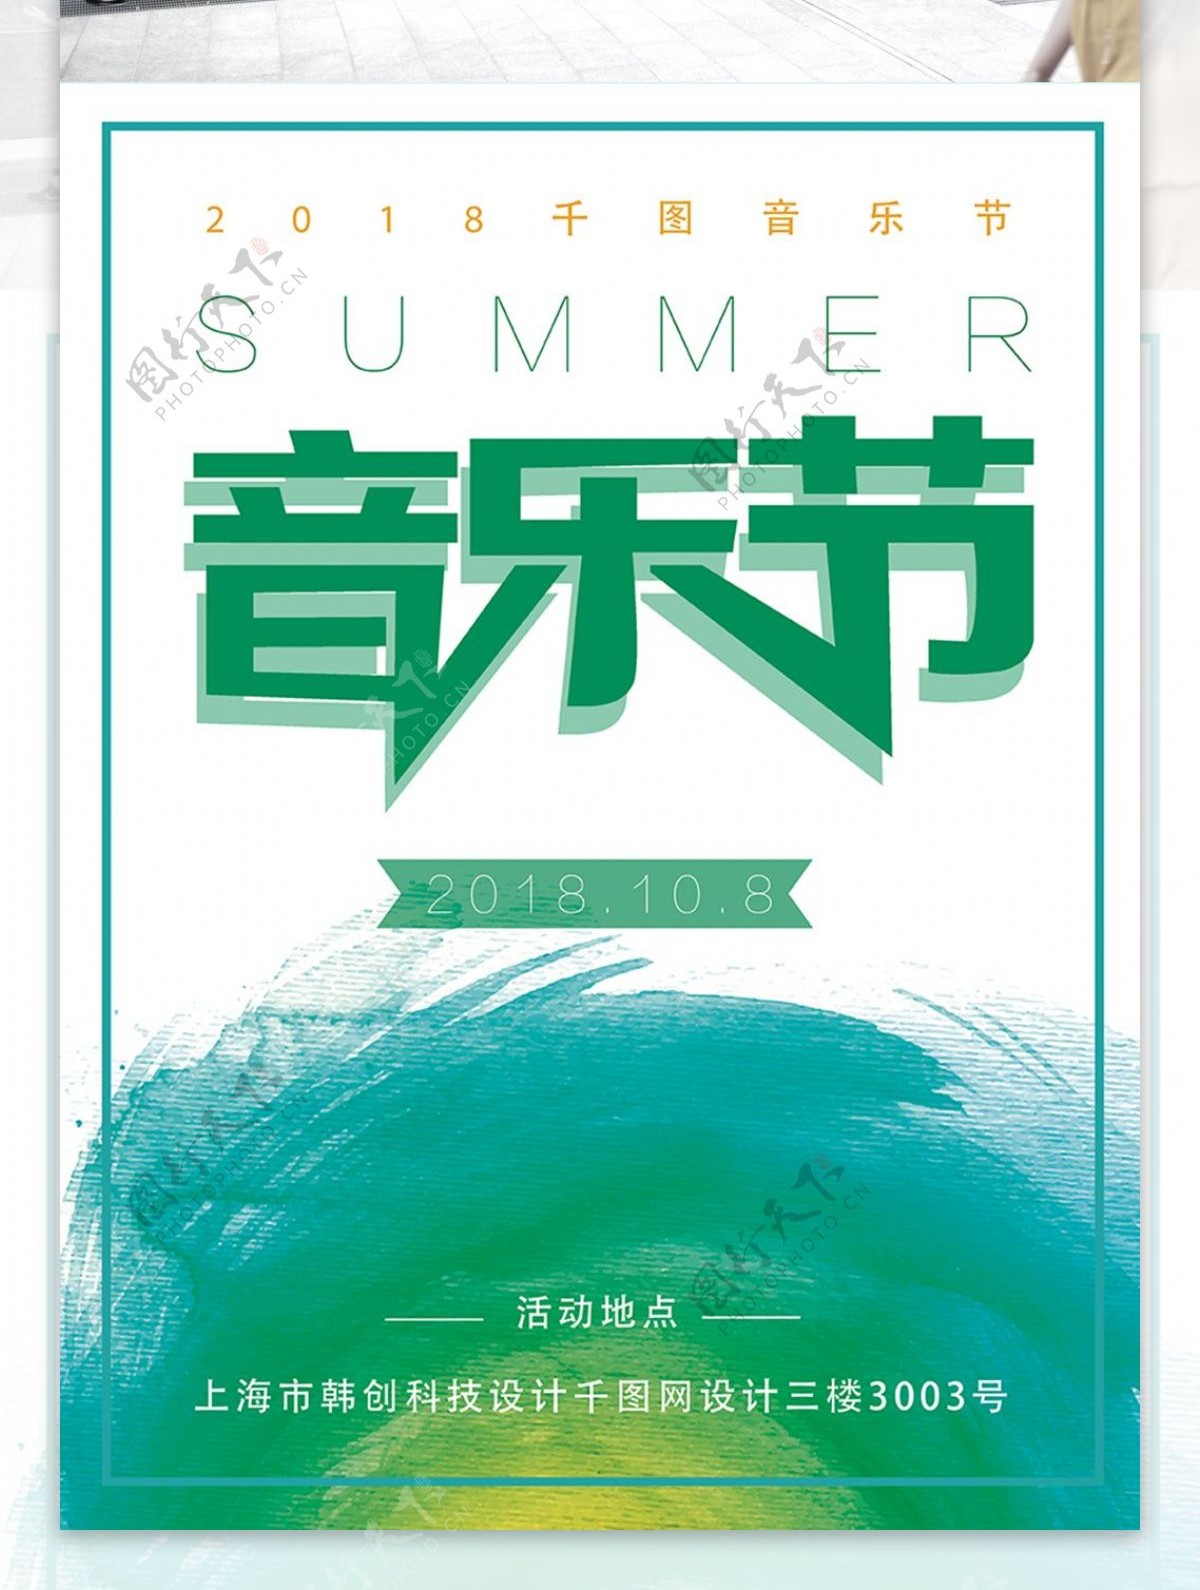 简约水墨风音乐节夏季海报